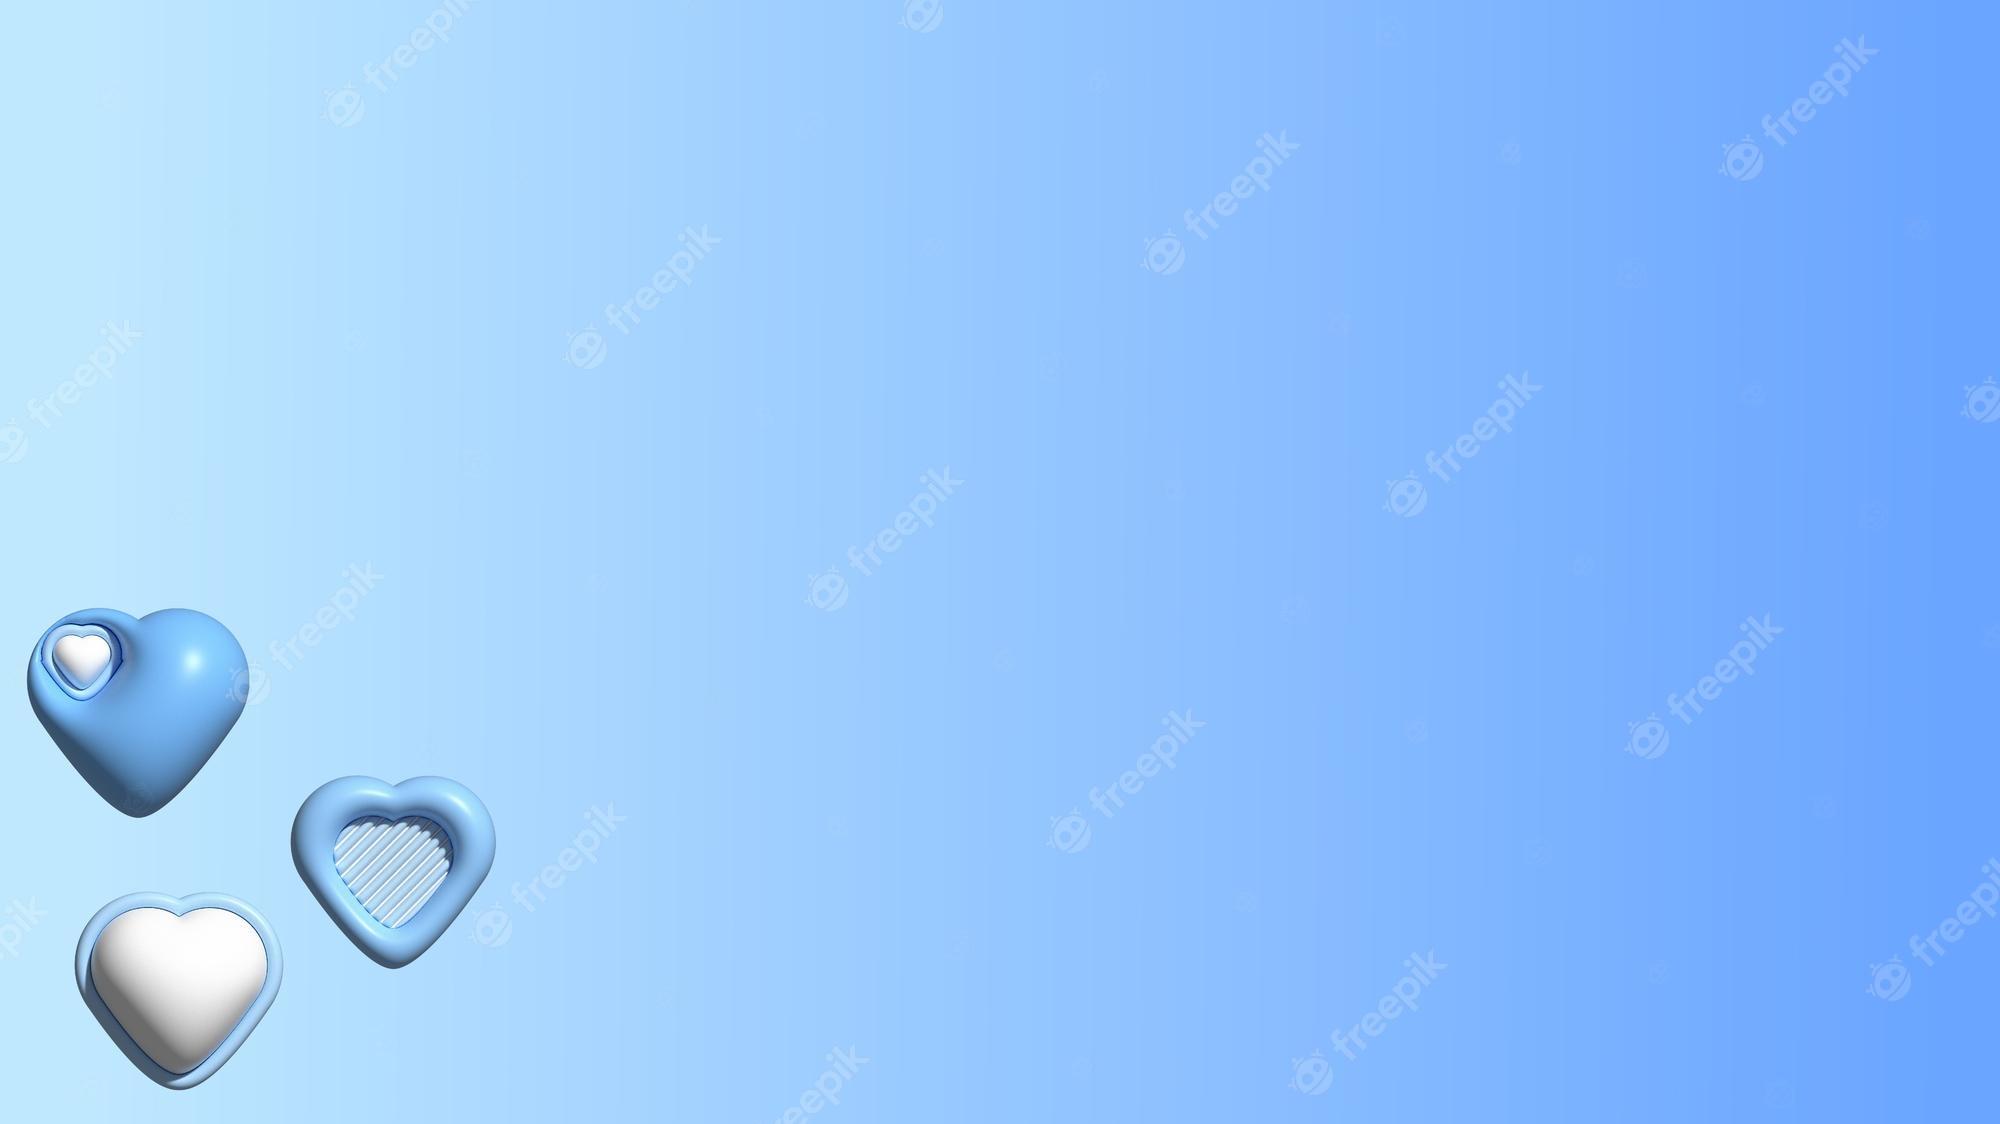 Premium Photo Aesthetic Cute 3d Blue Heart Shape On Gradient